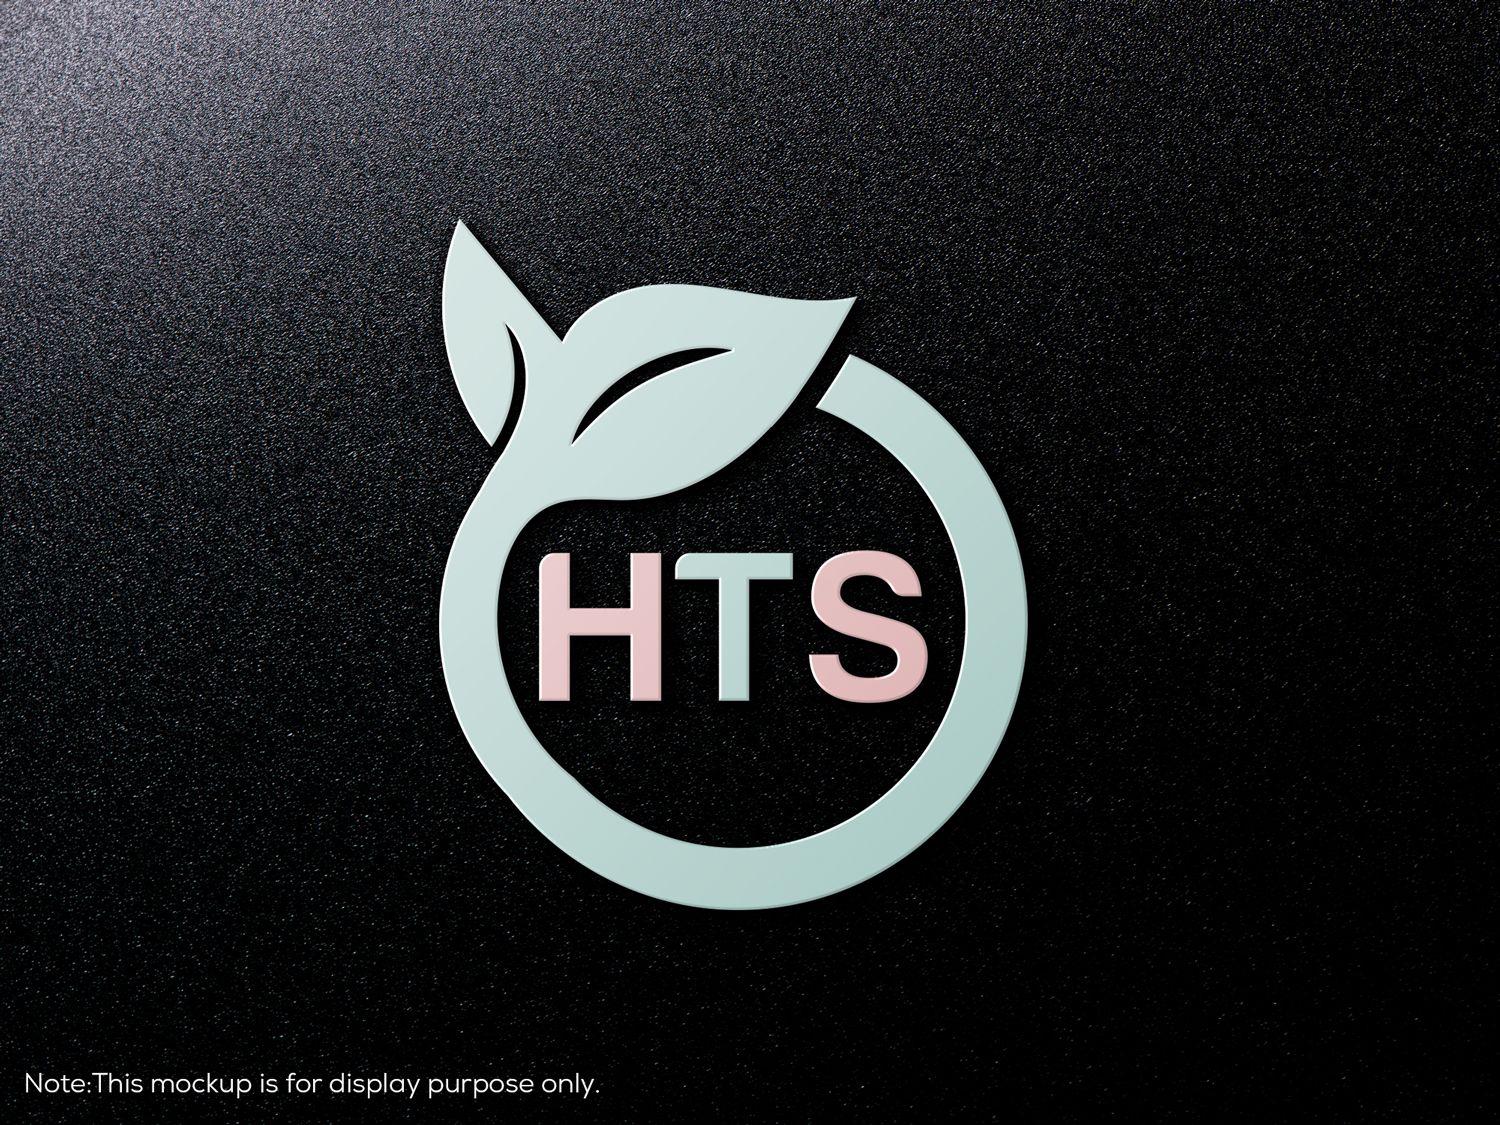 HTS Logo - Modern, Feminine, Healthcare Logo Design for HTS or Heal(thy) Self ...